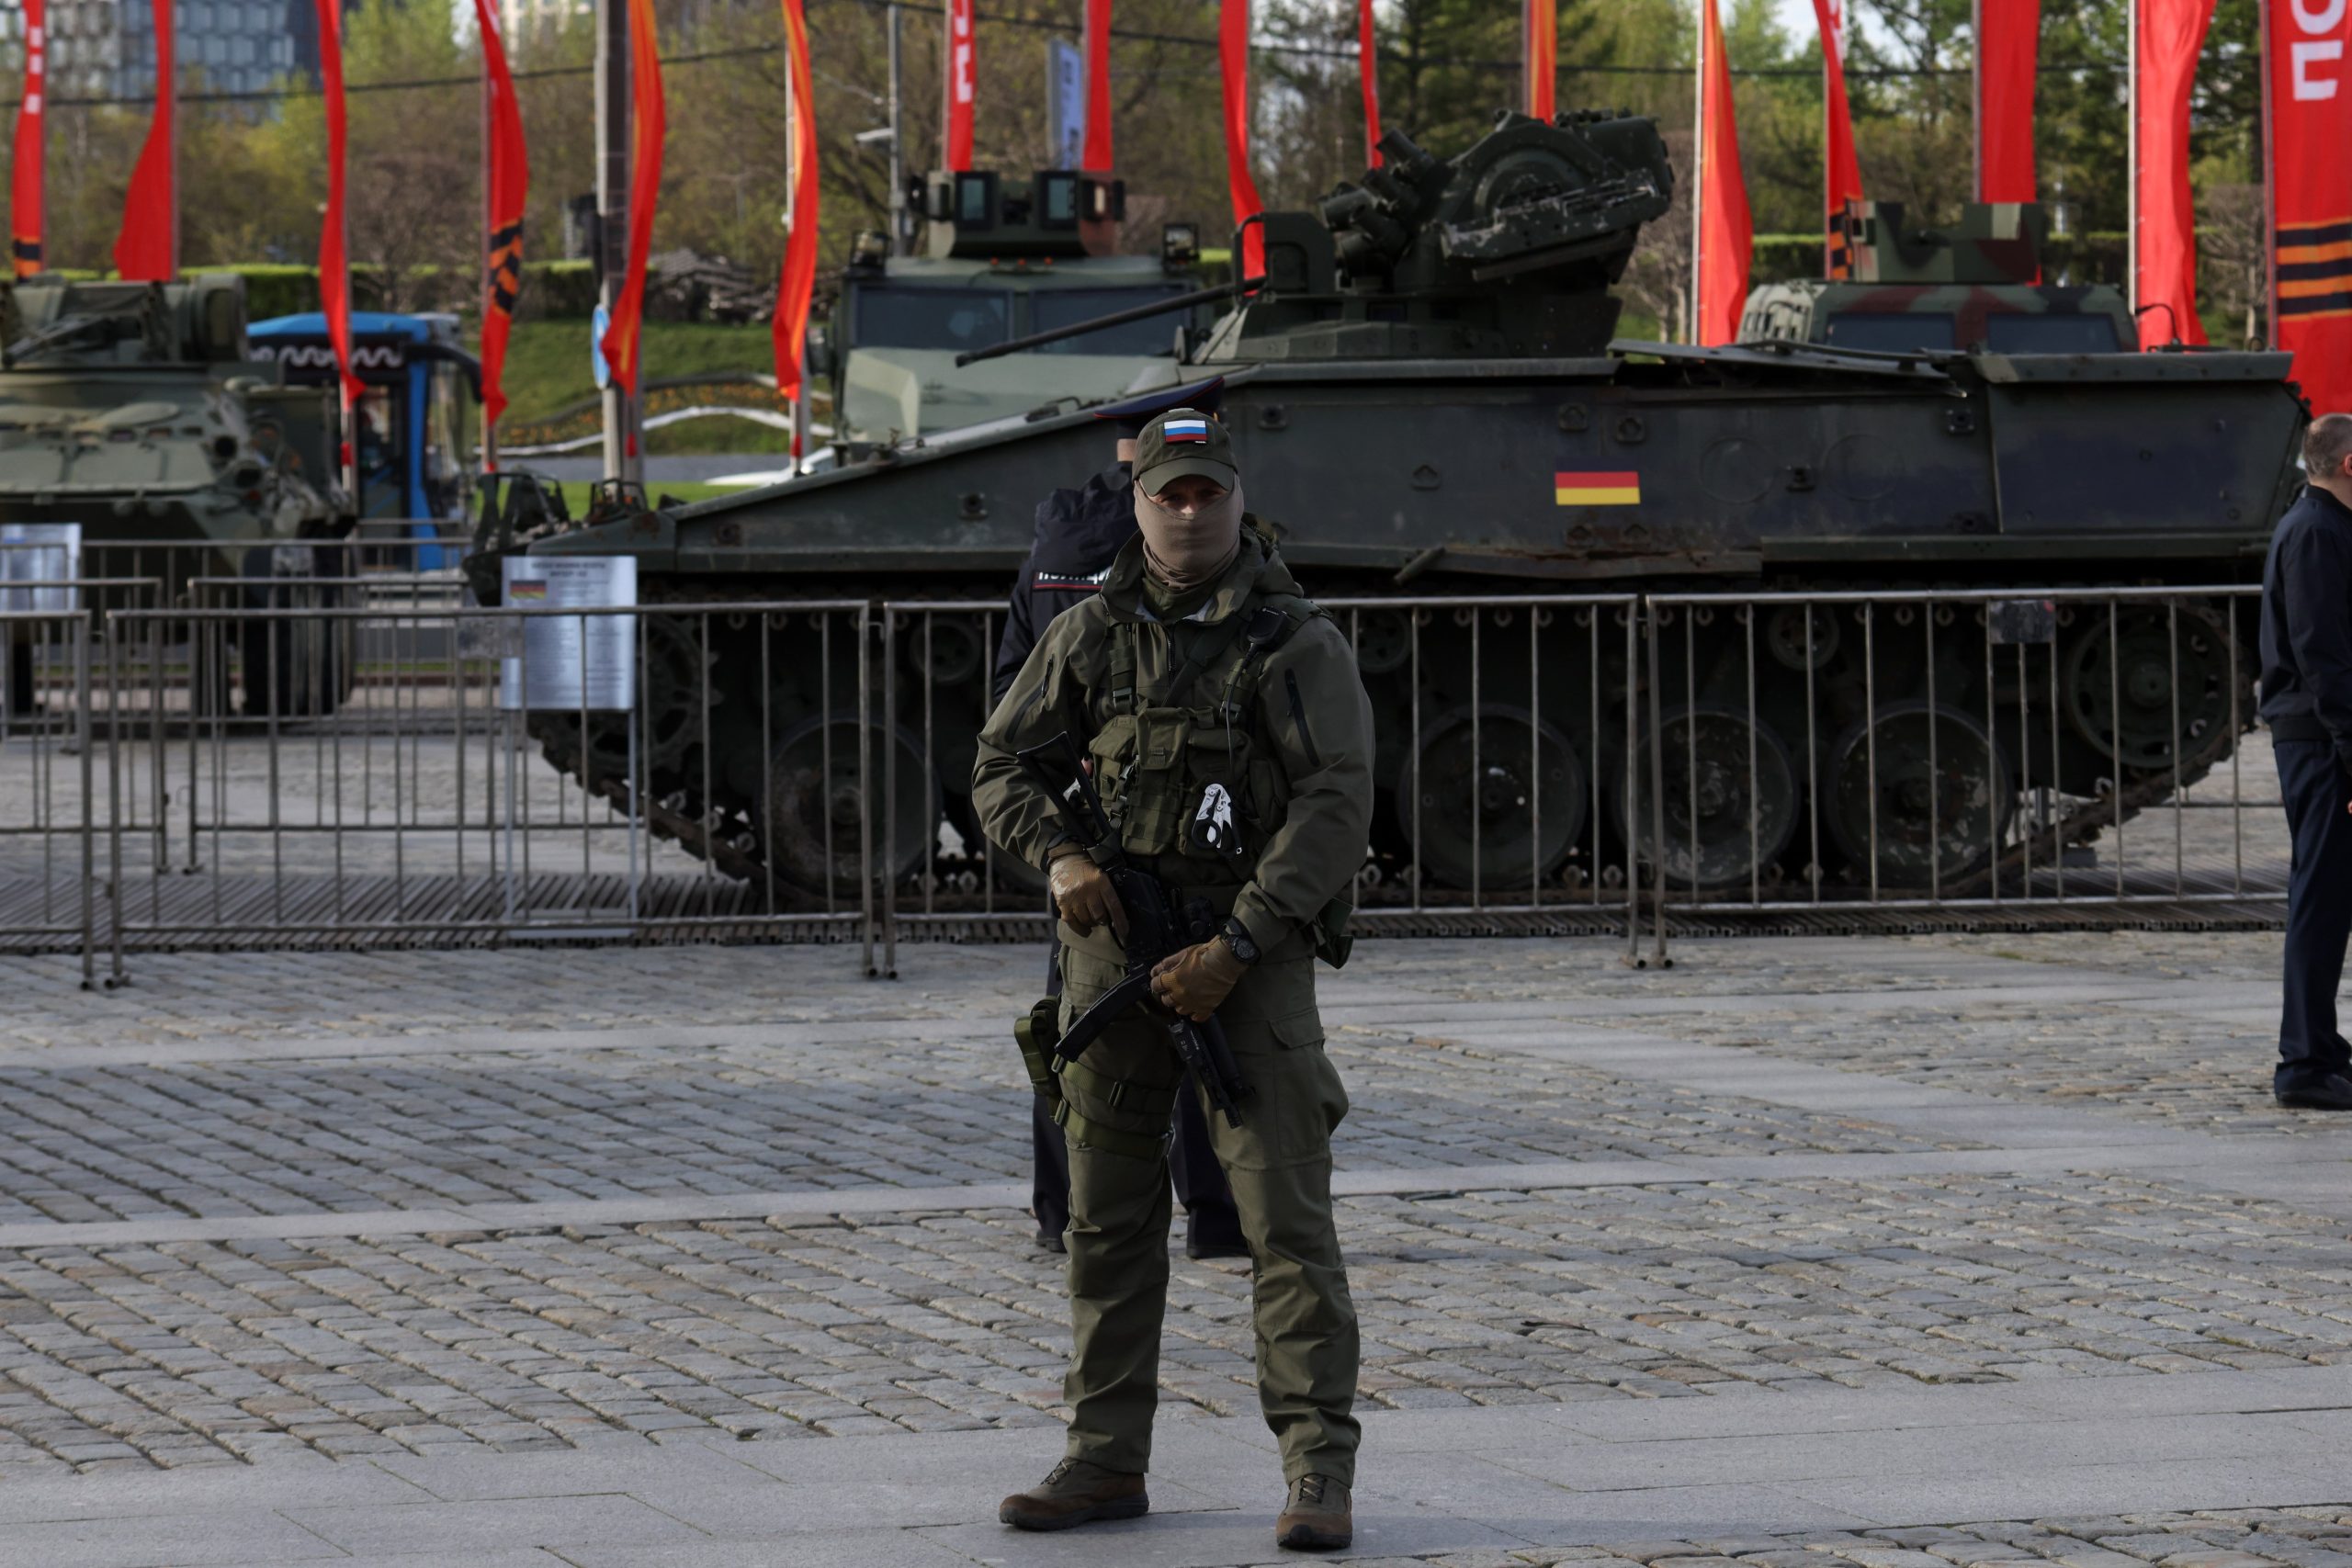 Un vehículo de combate de infantería alemán Marder 1A3 es uno de los más de 30 vehículos militares capturados en exhibición en la colina de Poklonnaya en Moscú